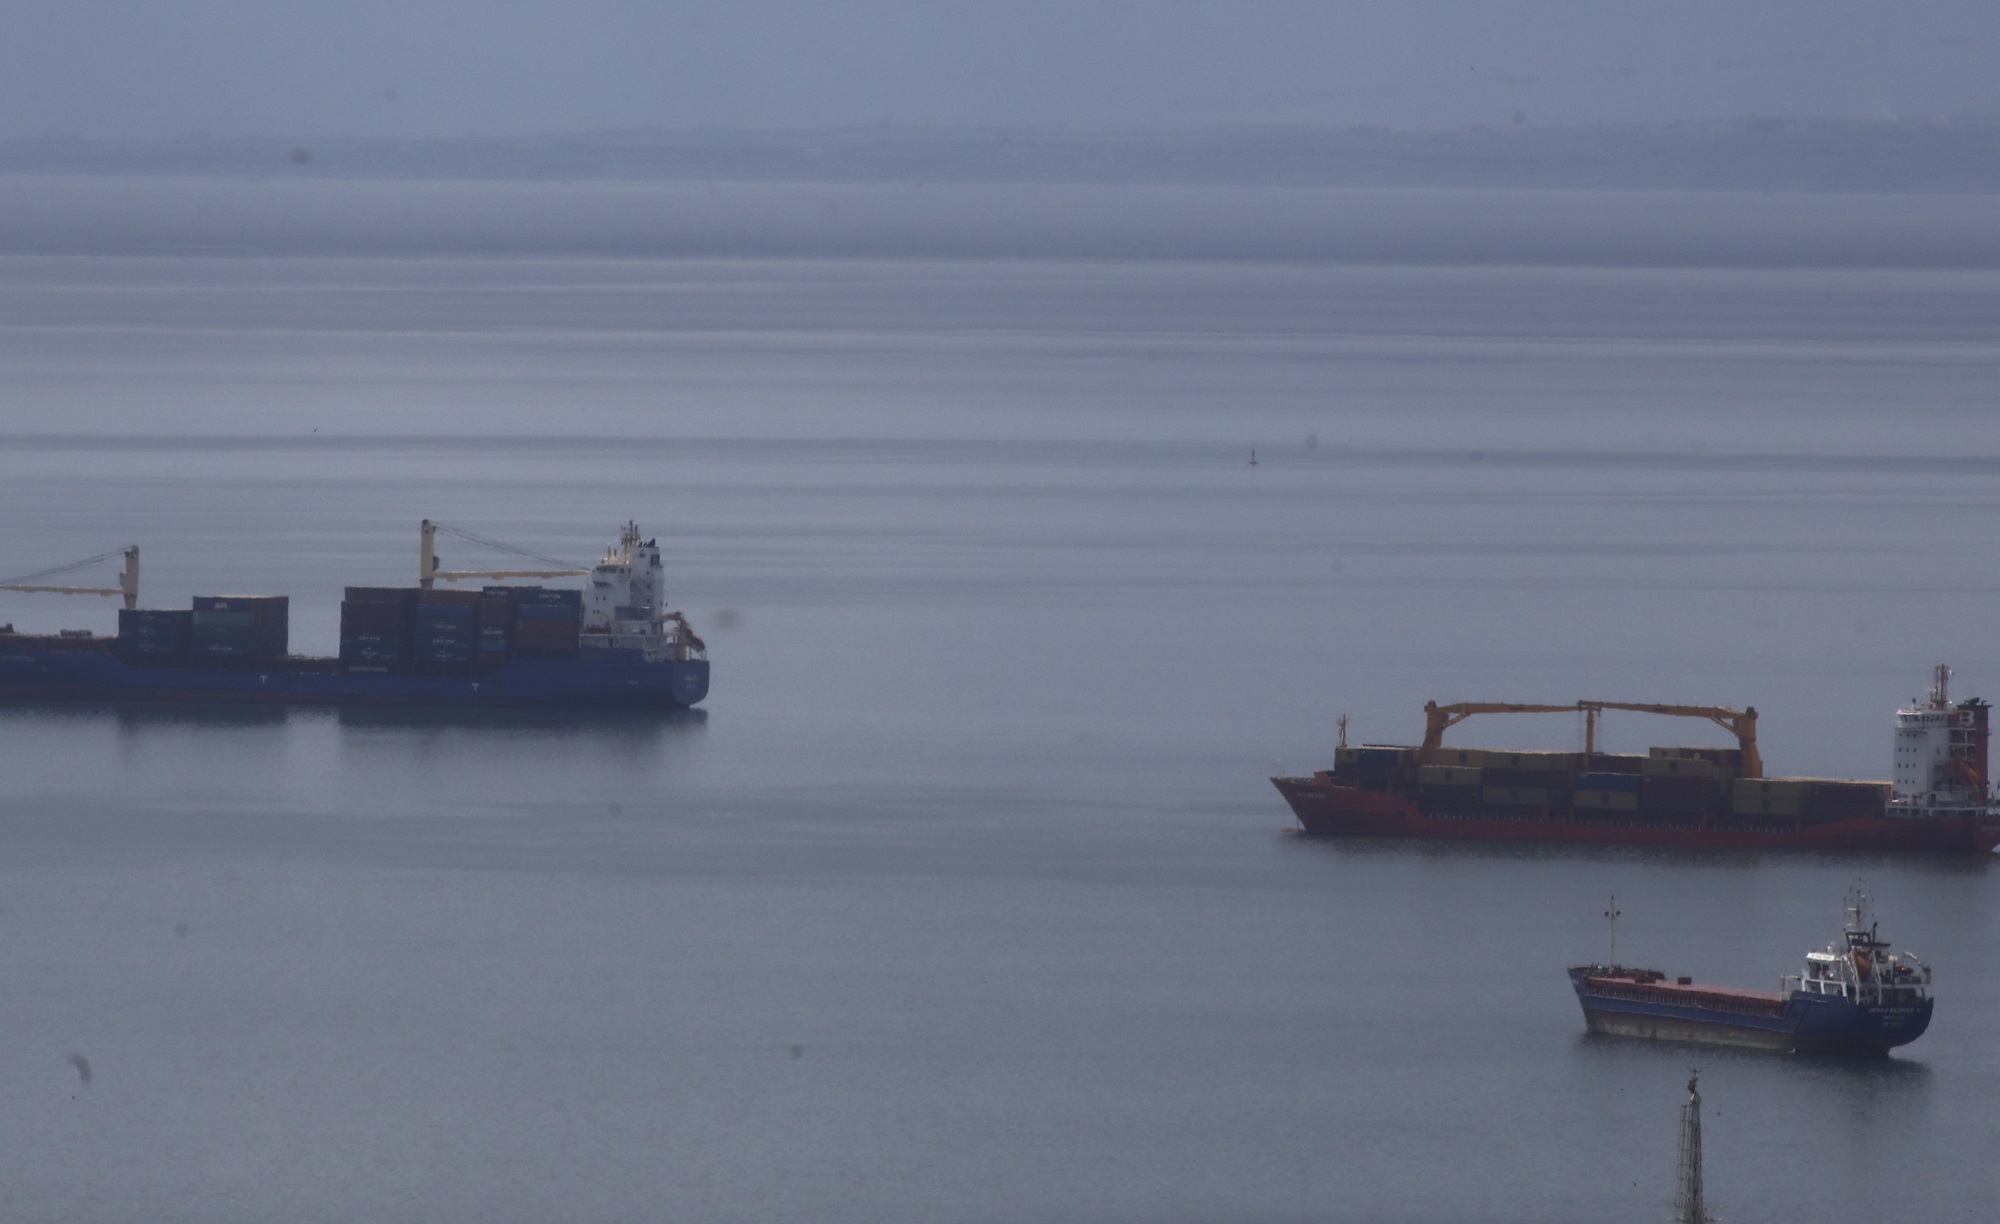 Προσάραξη φορτηγού πλοίου – Αποκολλήθηκε με τη συνδρομή ρυμουλκού από τη θαλάσσια περιοχή της Μακρονήσου